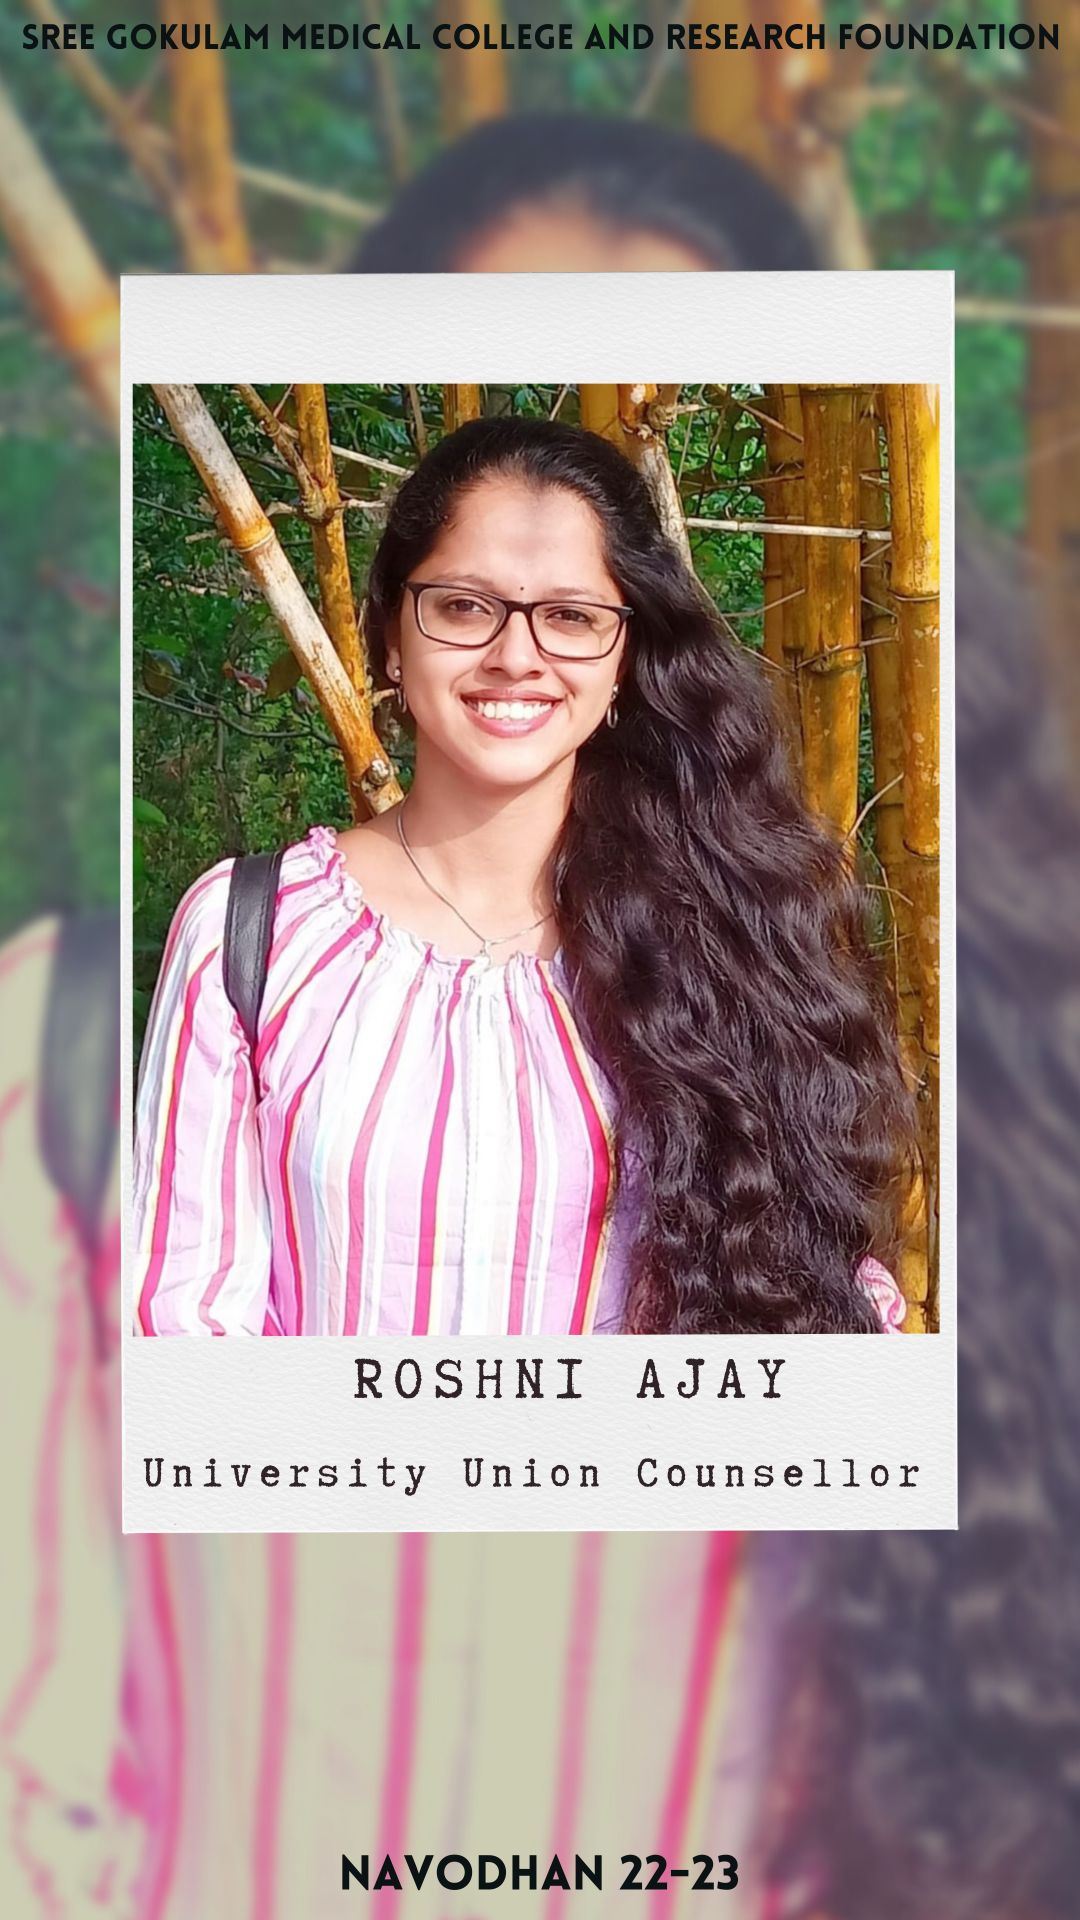 Roshni Ajay